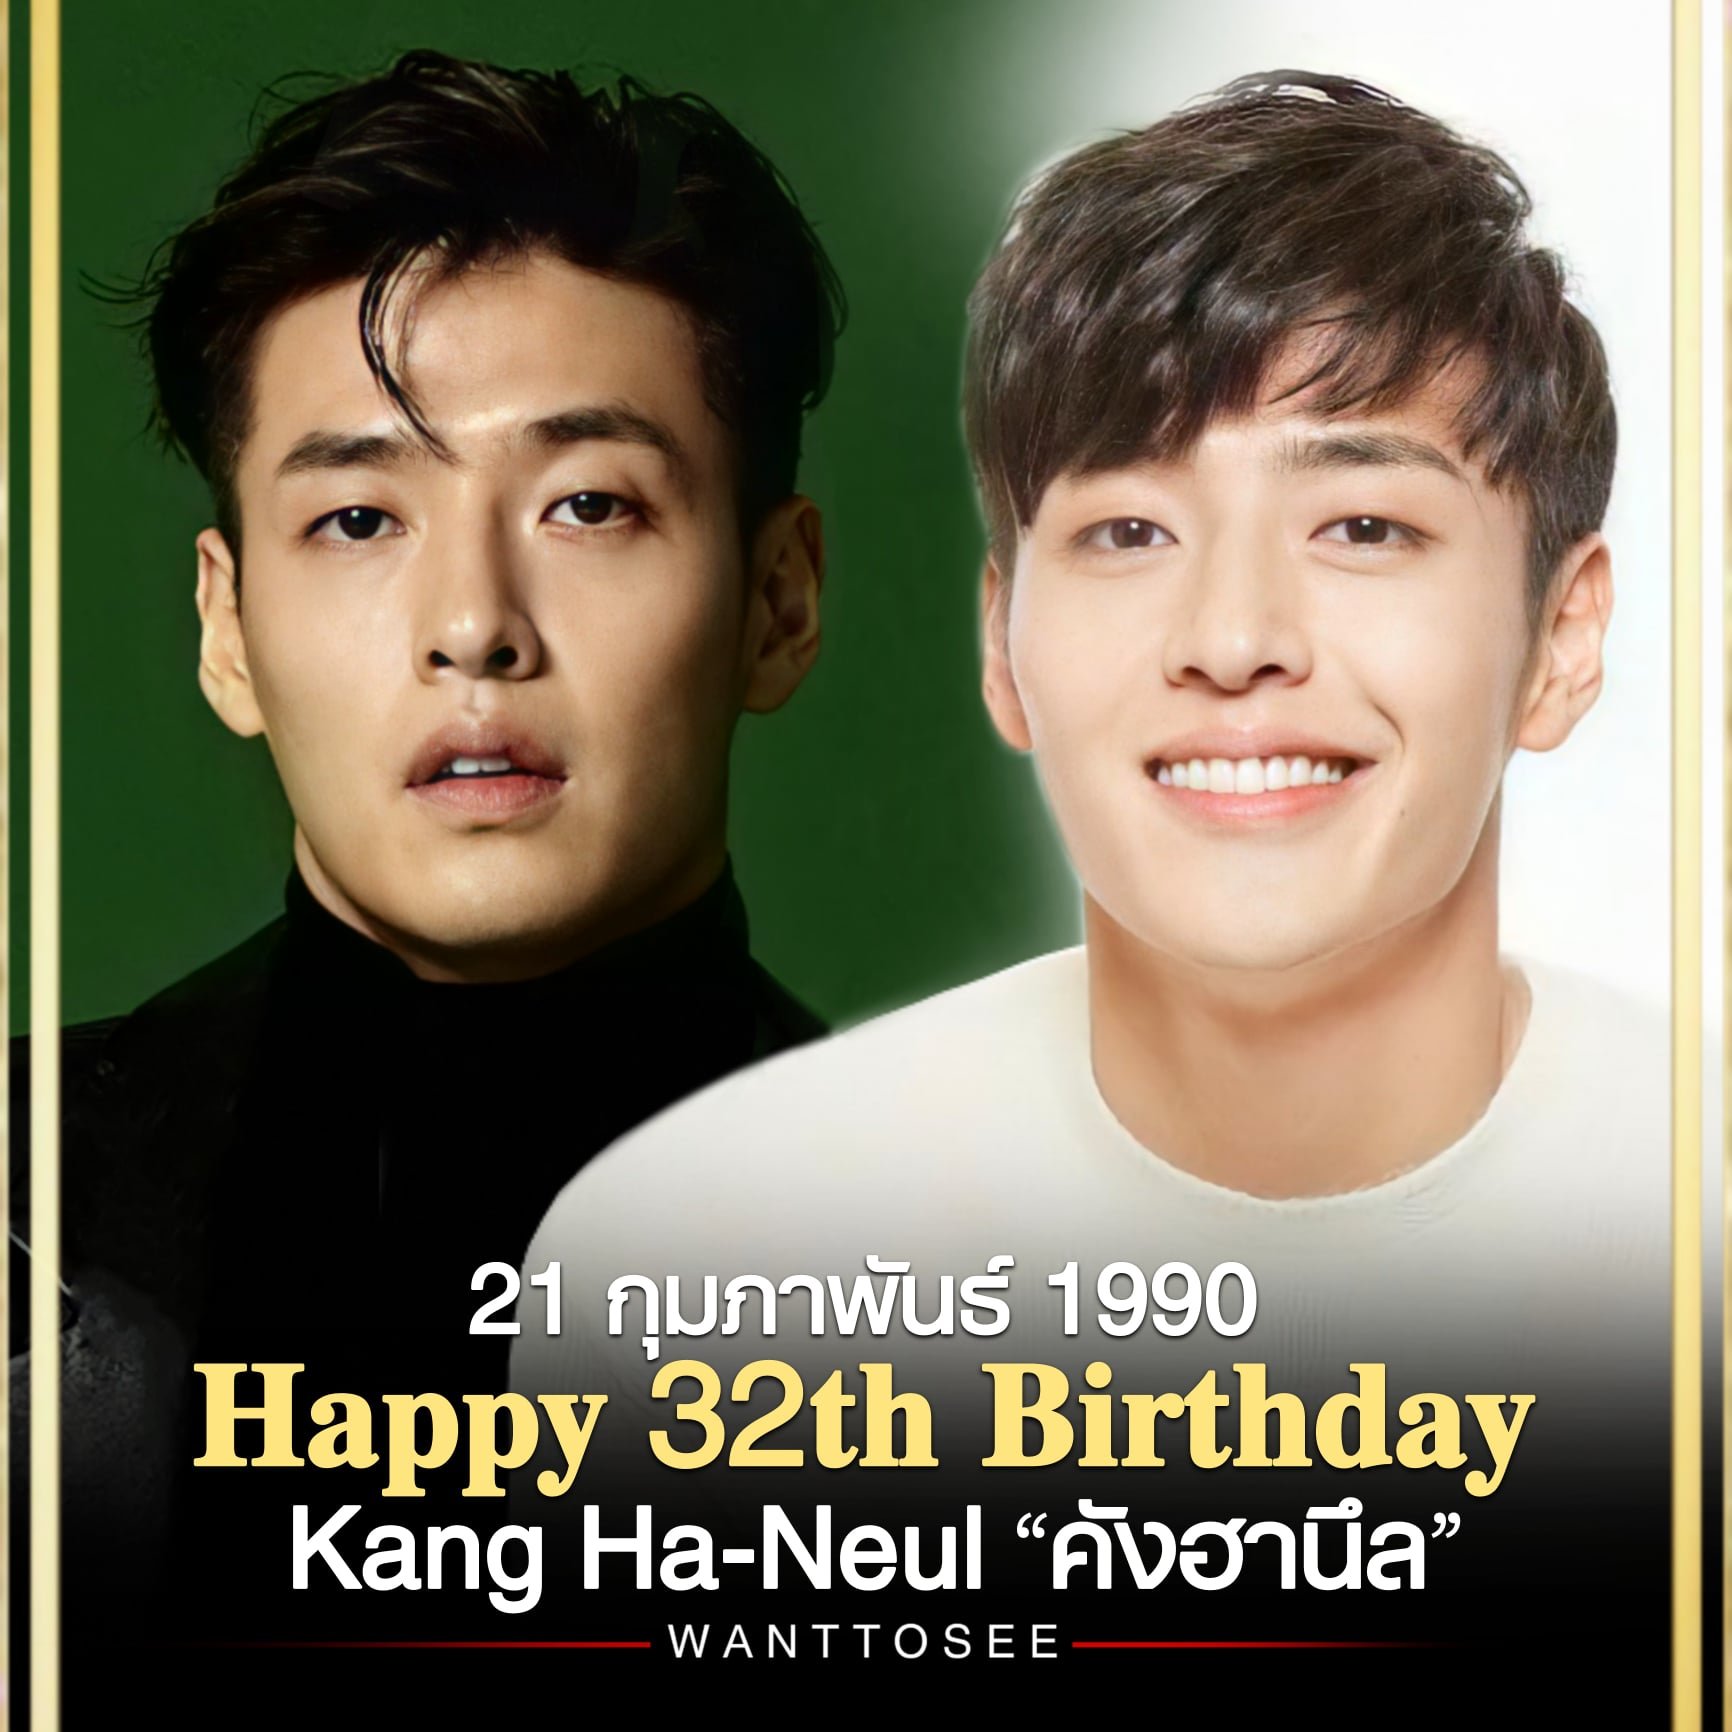 Happy 32th Birthday, Kang Ha-Neul 